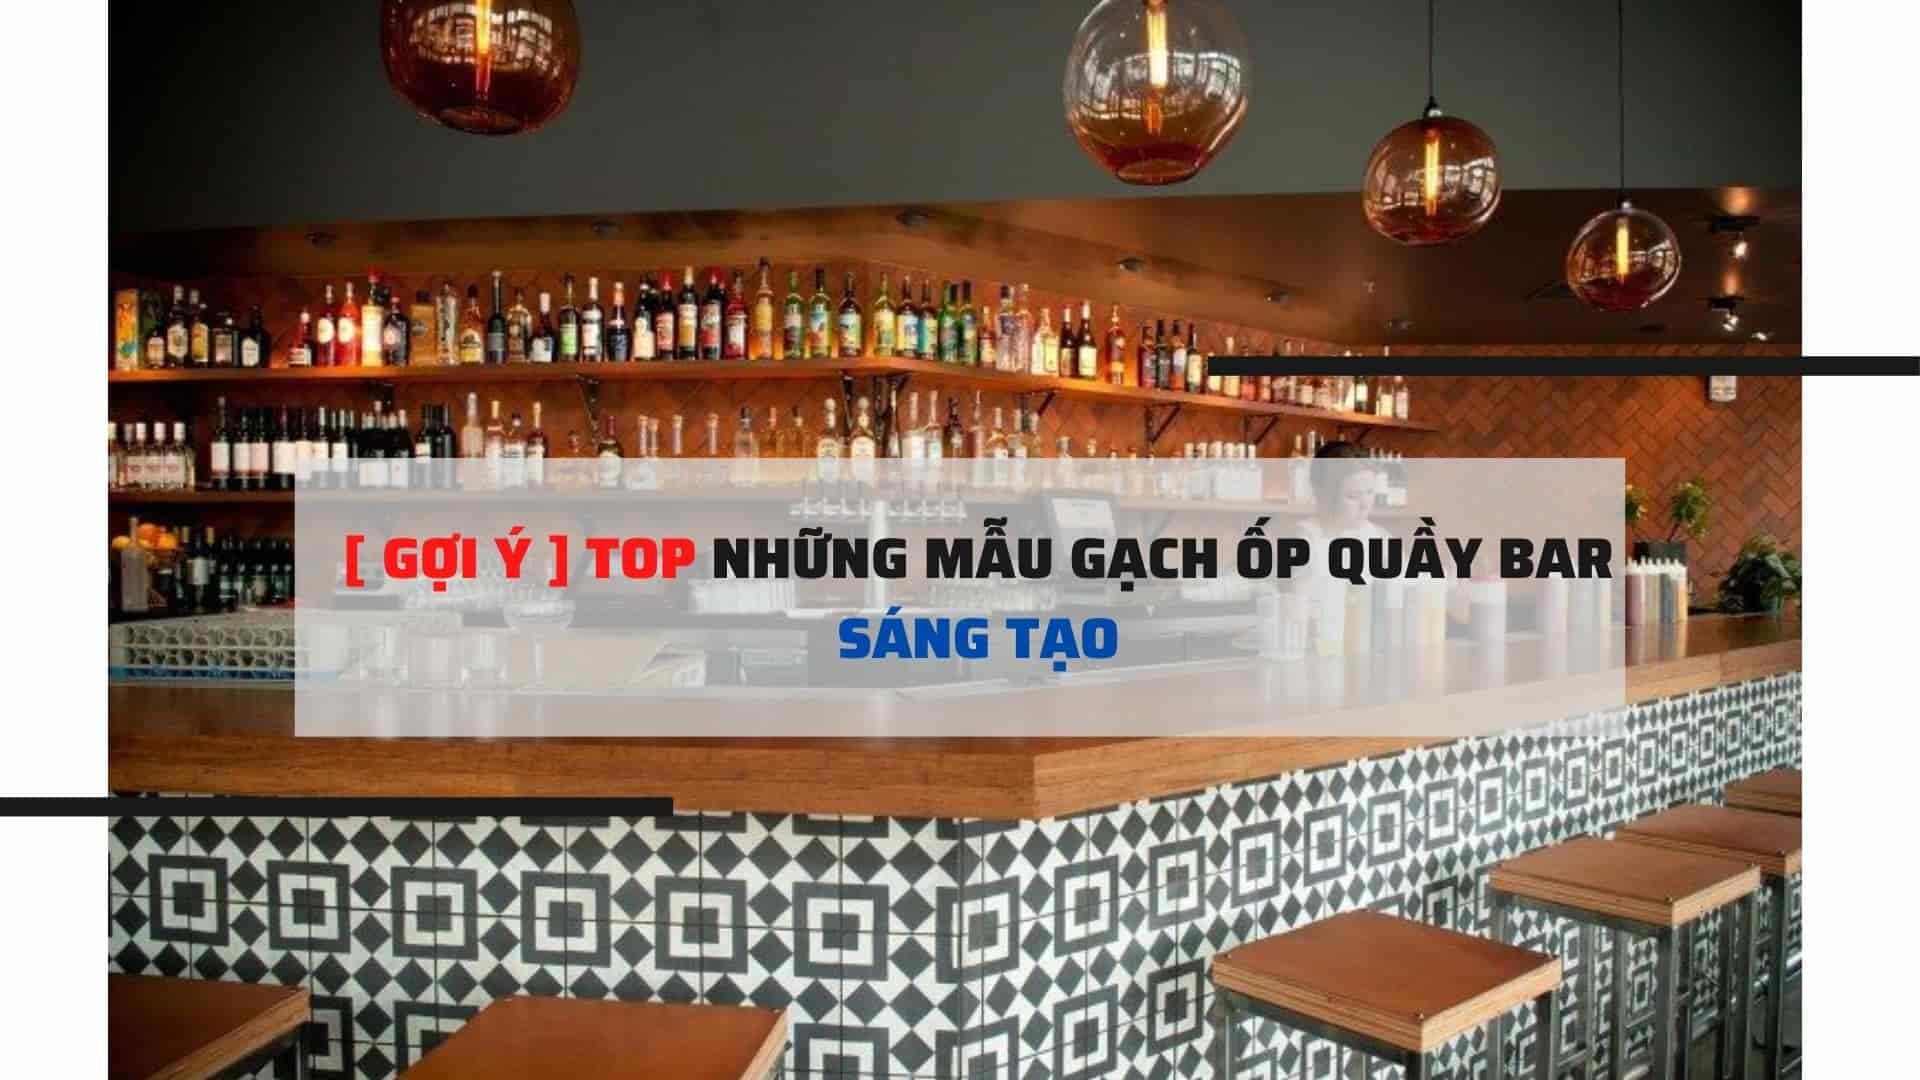 TOP NHUNG MAU GACH OP QUAY BAR SANG TAO